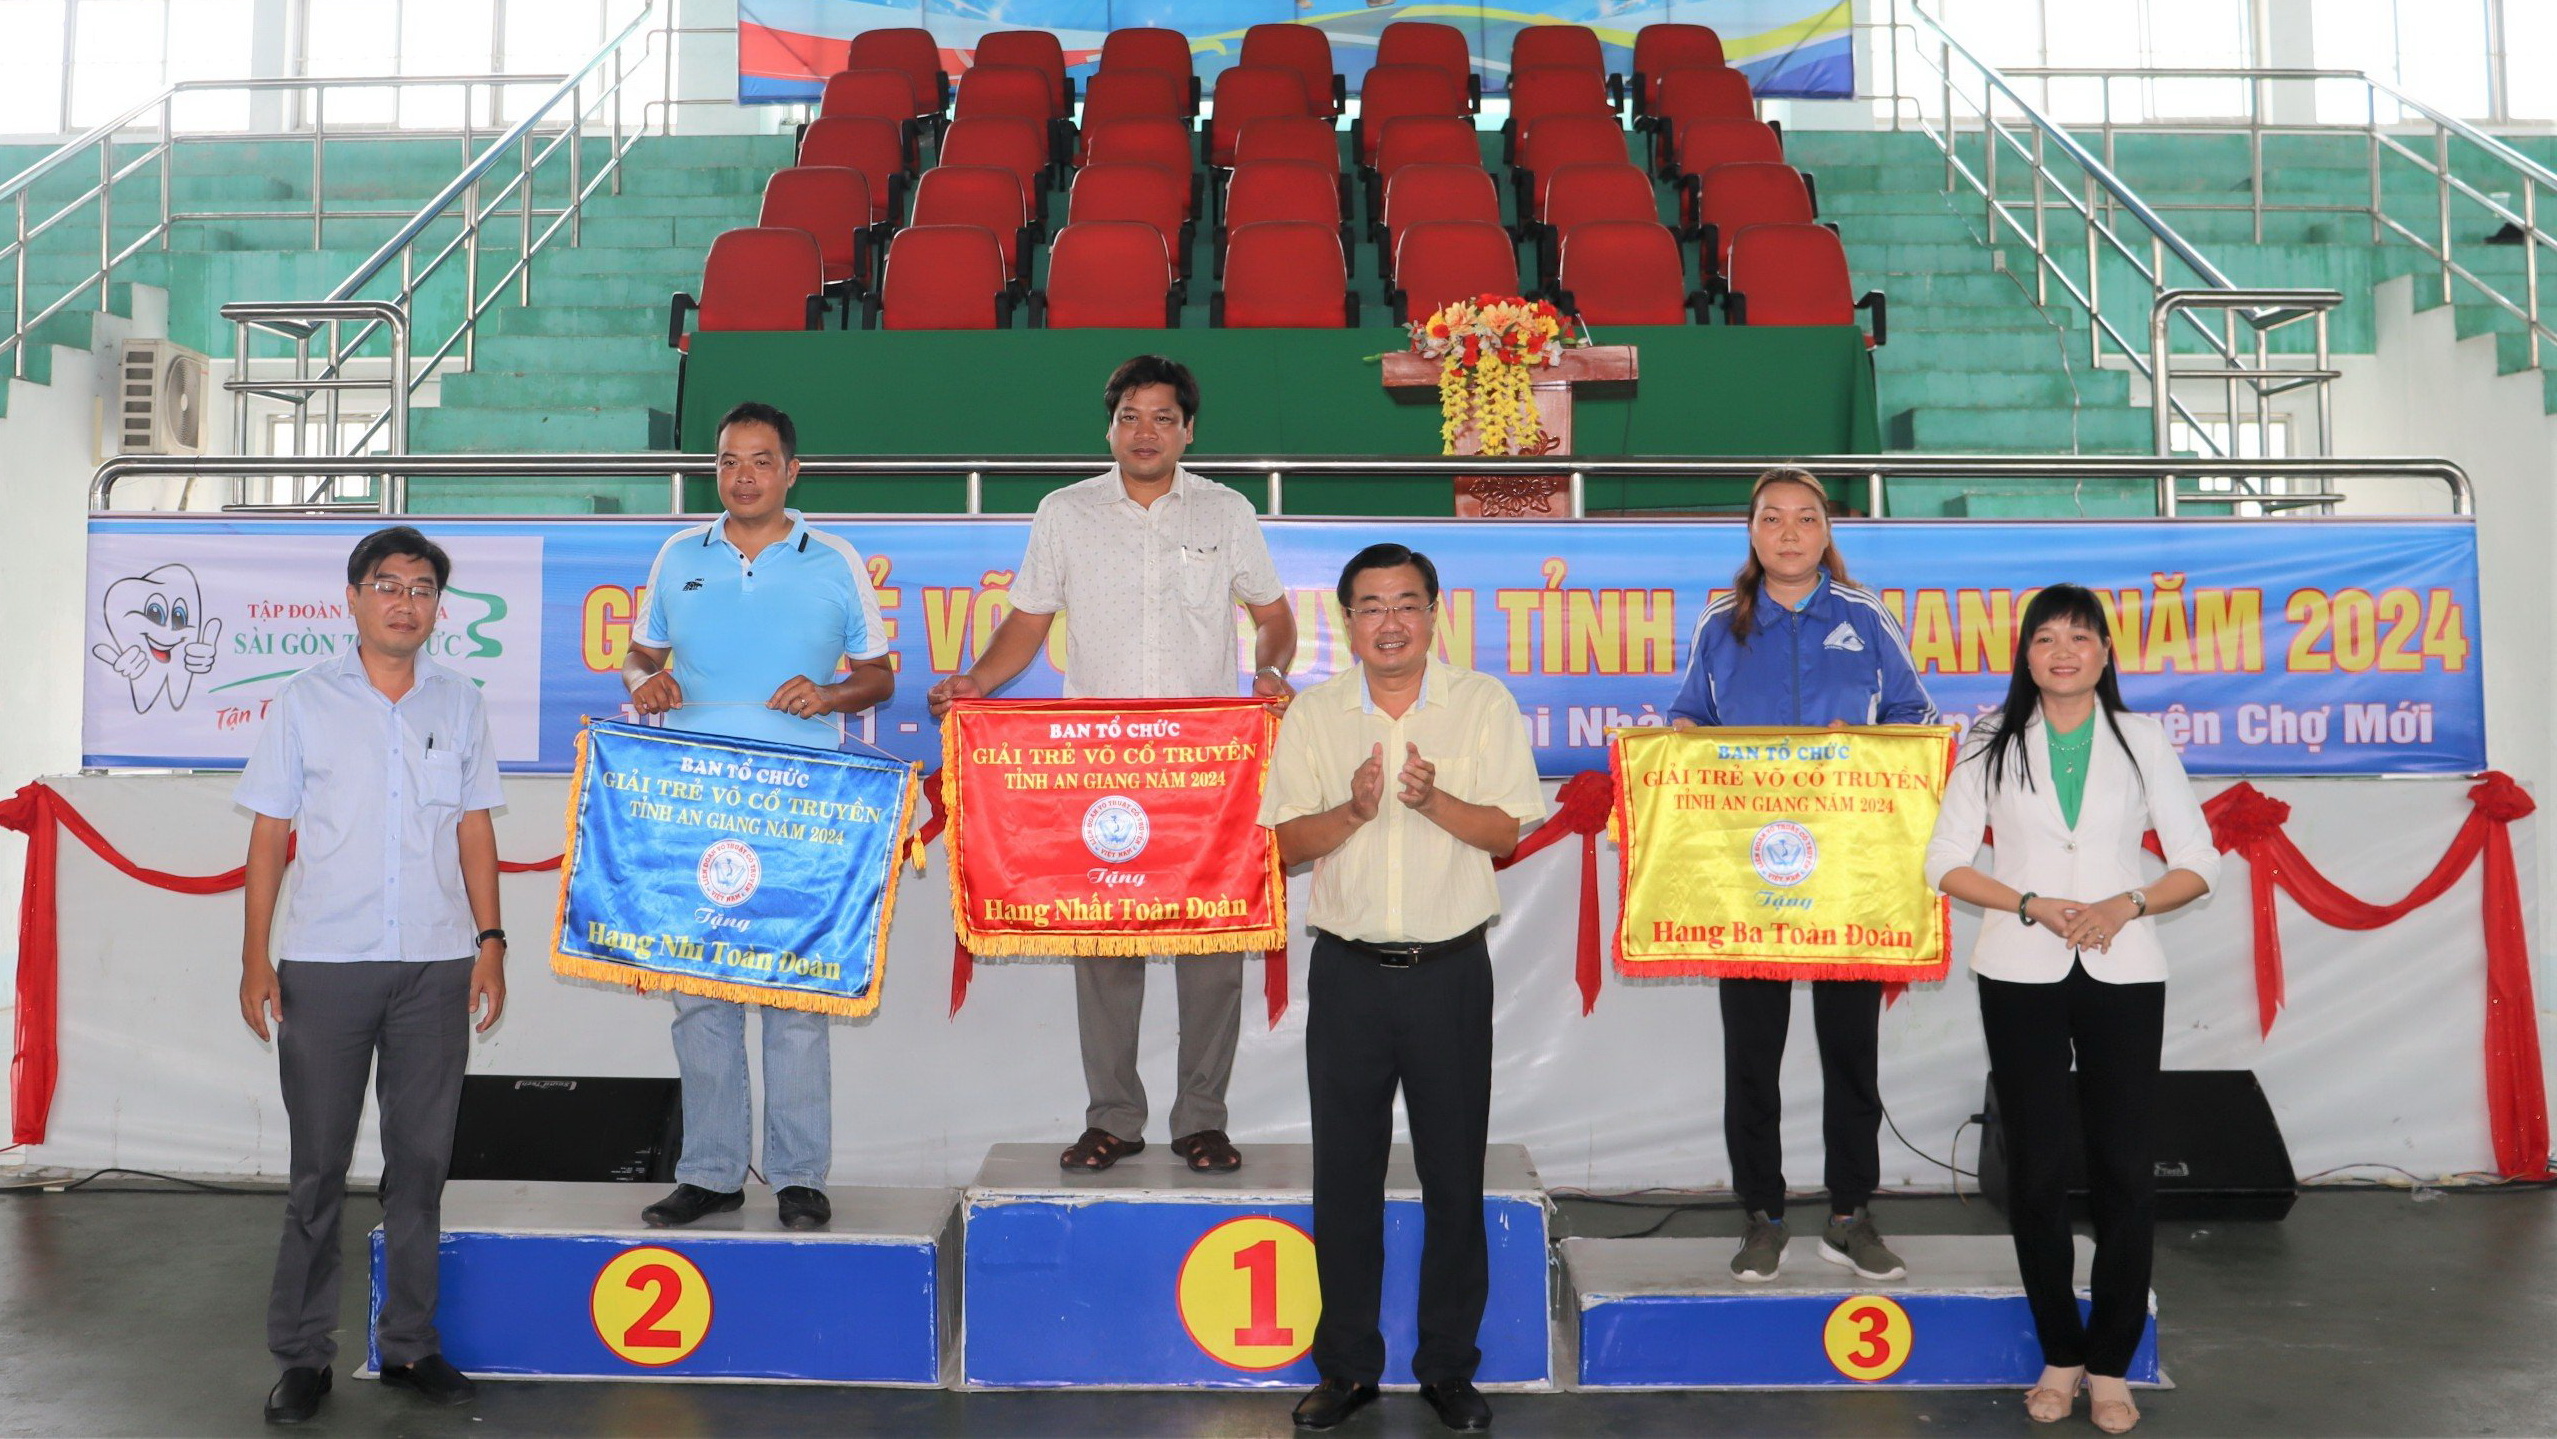 Chợ Mới xuất sắc giành nhất toàn đoàn Giải trẻ võ cổ truyền các câu lạc bộ tỉnh An Giang